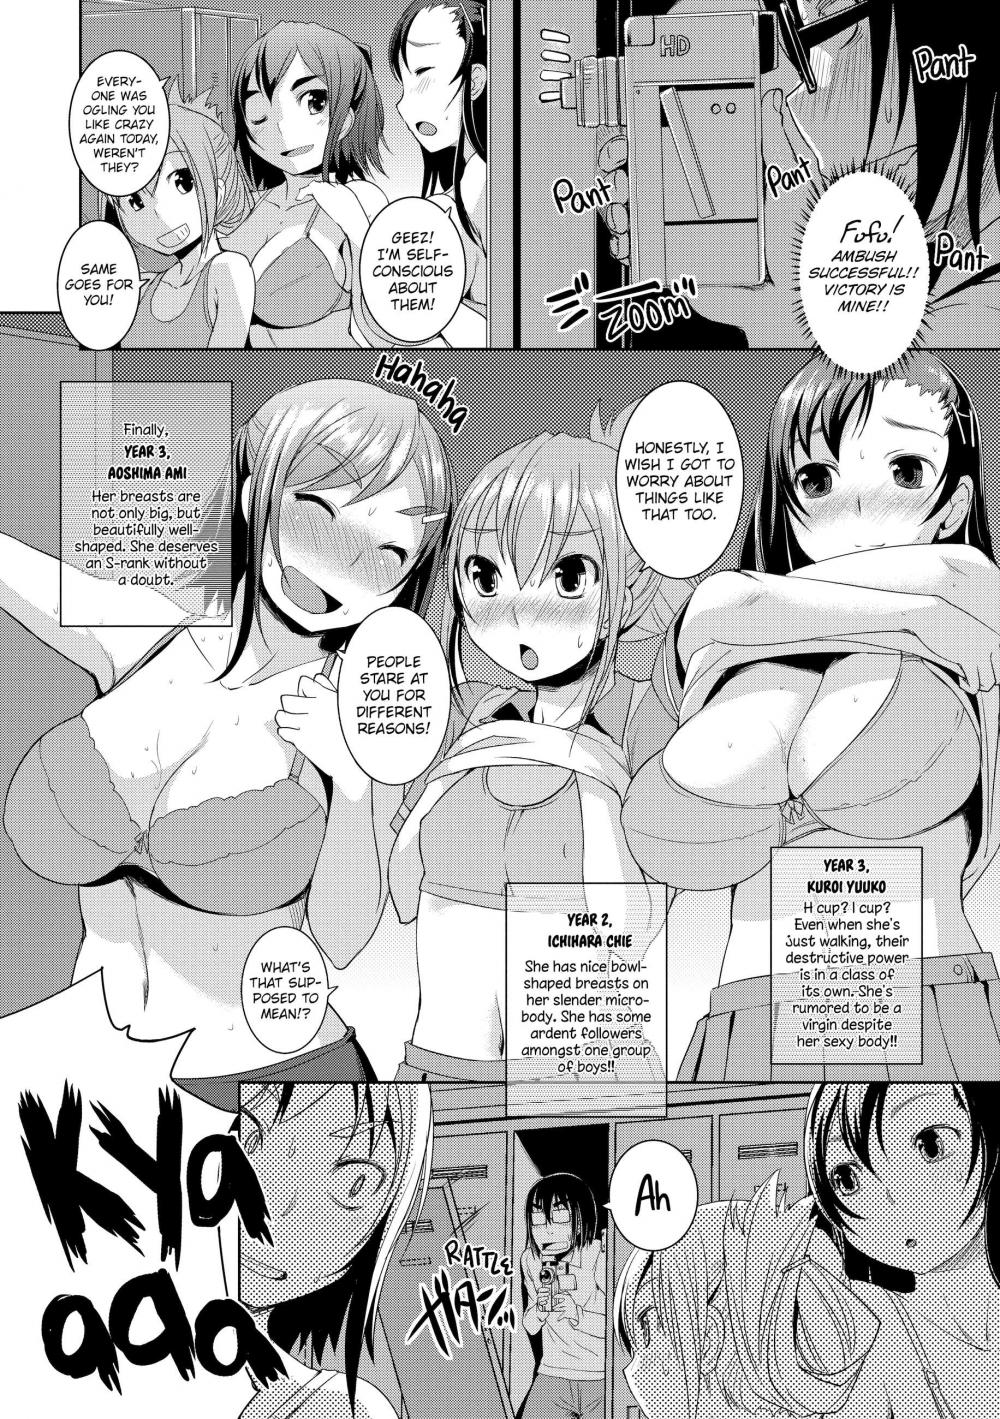 Hentai Manga Comic-Peachy-Butt Girls-Chapter 5 - boob shot!-2